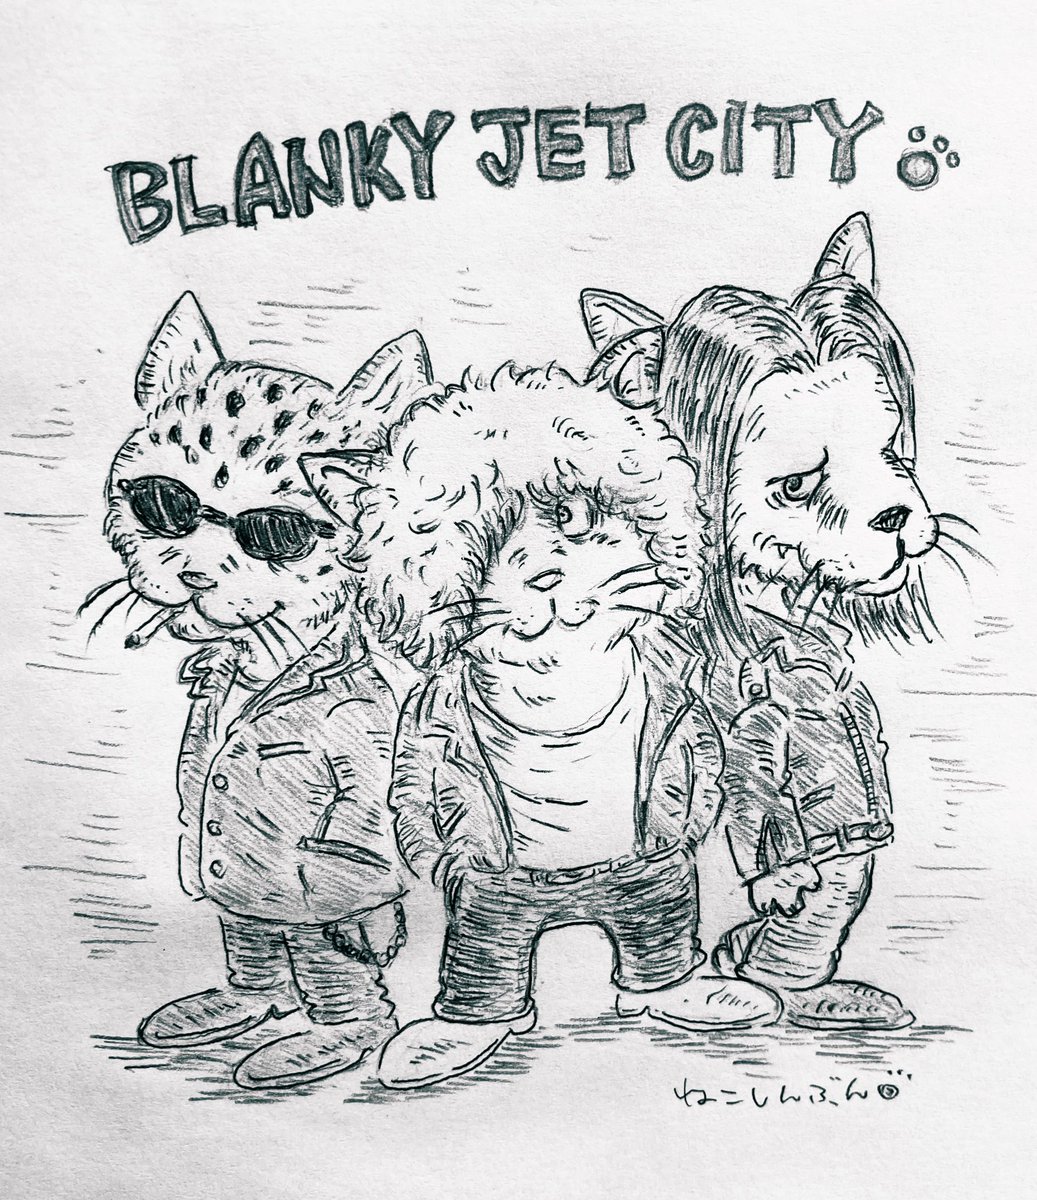 動物界のRockバンド ?BLANKEY JET CITY
猫界のRockファン達の大好物ですね☺️✨
#ブランキージェットシティ 
#イラスト #猫イラスト #絵描きさんと繫がりたい #浅井健一 #アナログイラスト 
#邦楽ロックband 